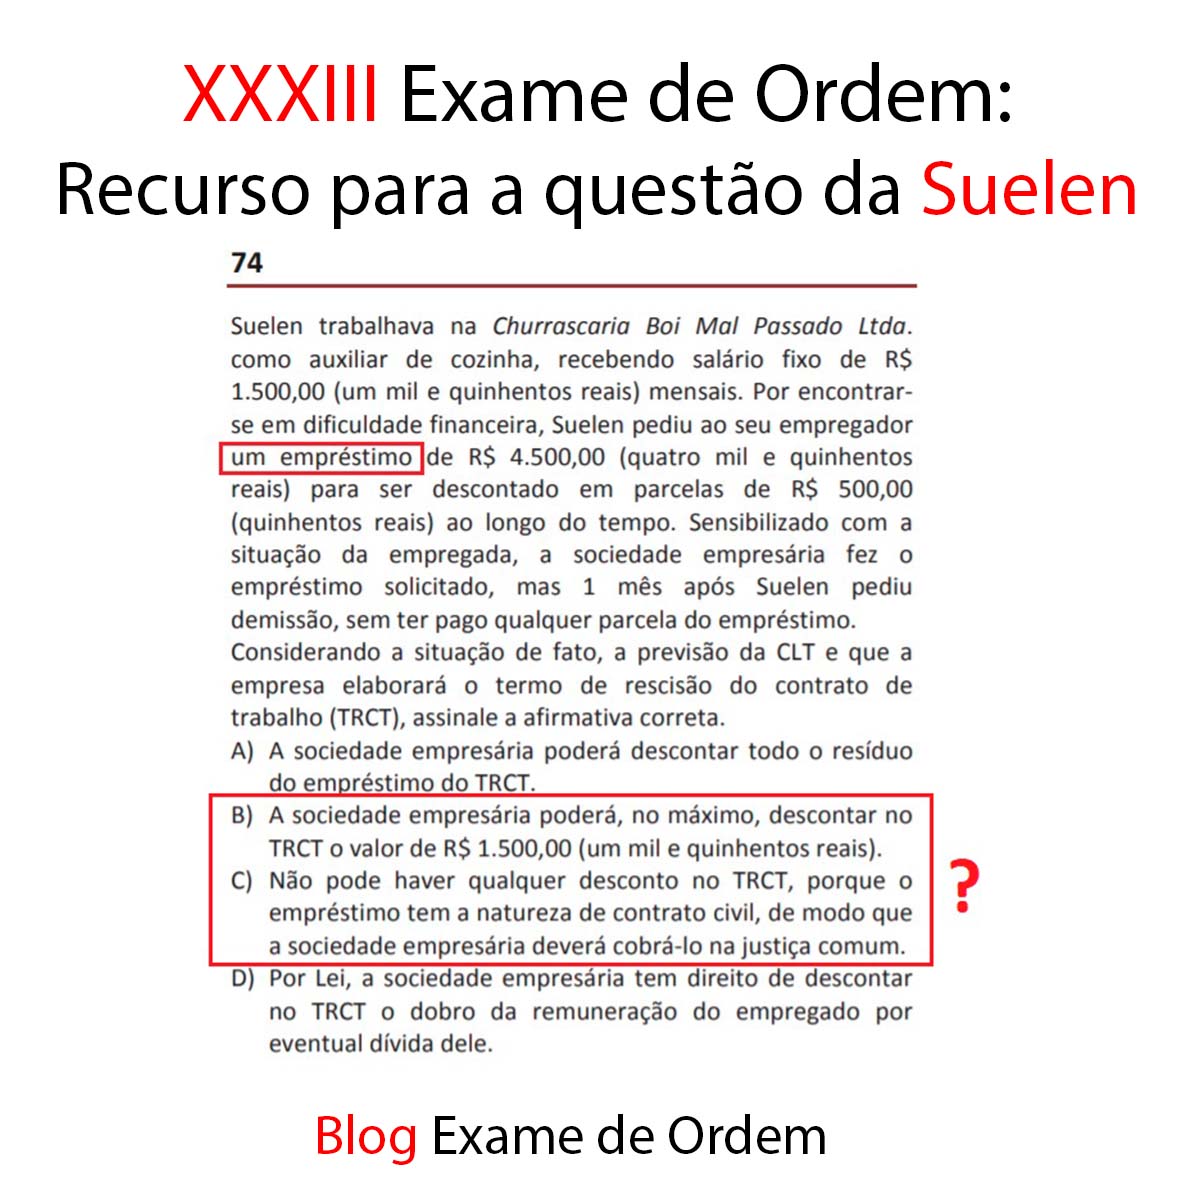 XXXIII Exame de Ordem: Recurso para a questão da Suelen